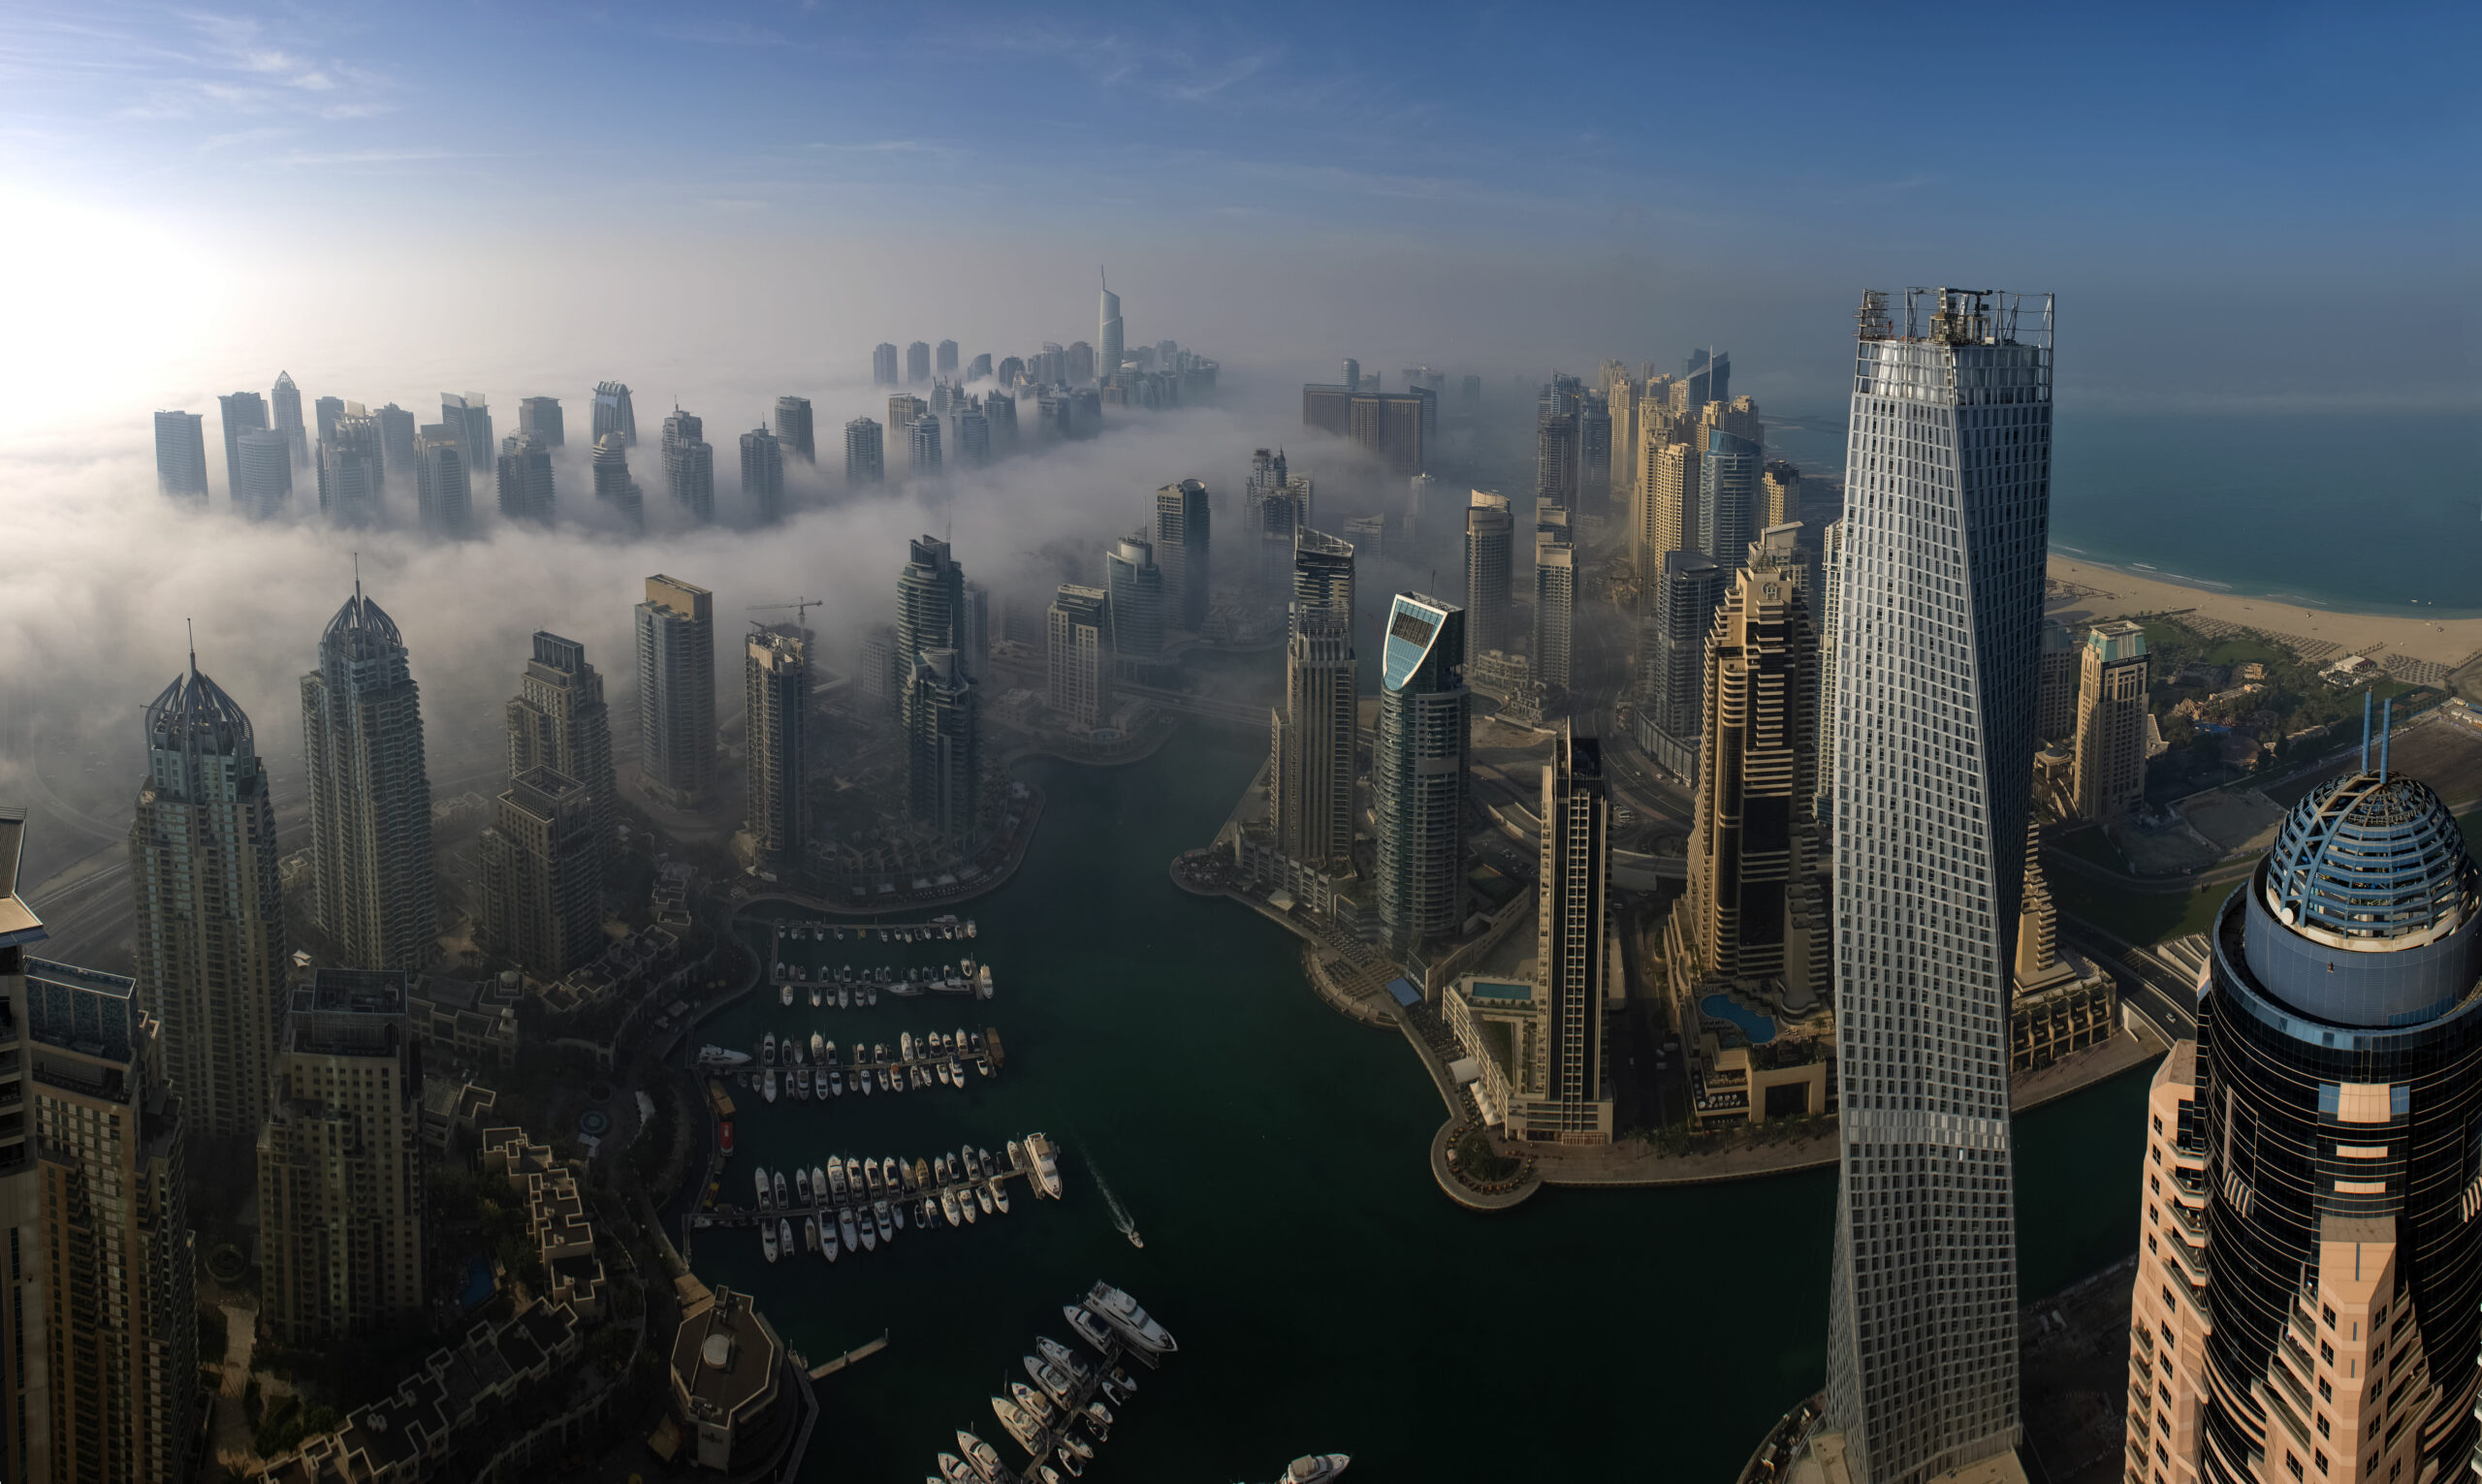 La demanda rusa de propiedades en Dubai se está desacelerando, pero la de China se está recuperando, dice el presidente de DAMAC